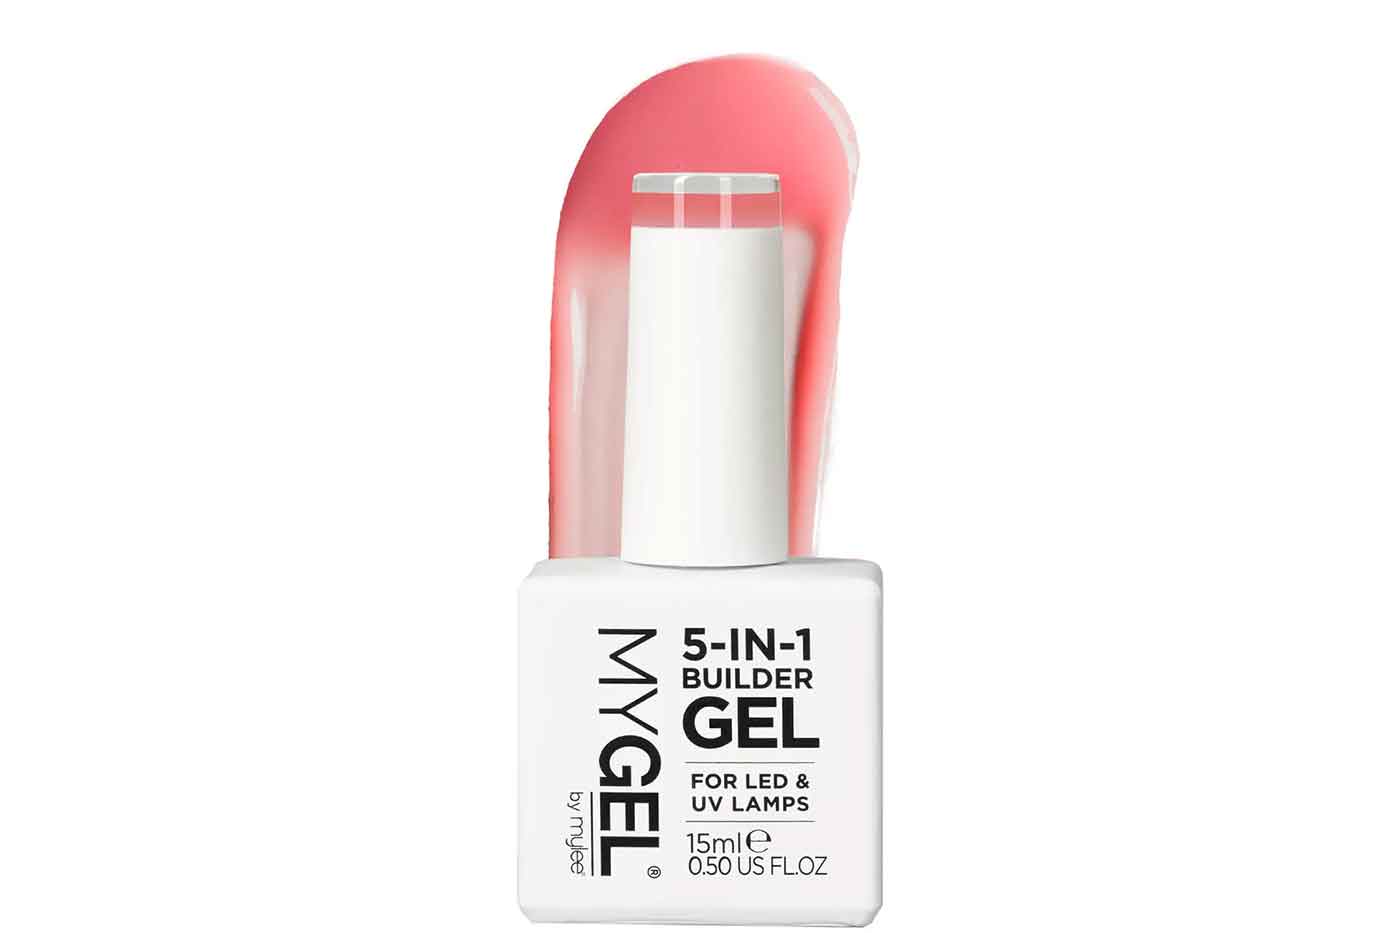 Elevate the nail look with Mylee 5-in-1 Builder Gel - StyleSpeak